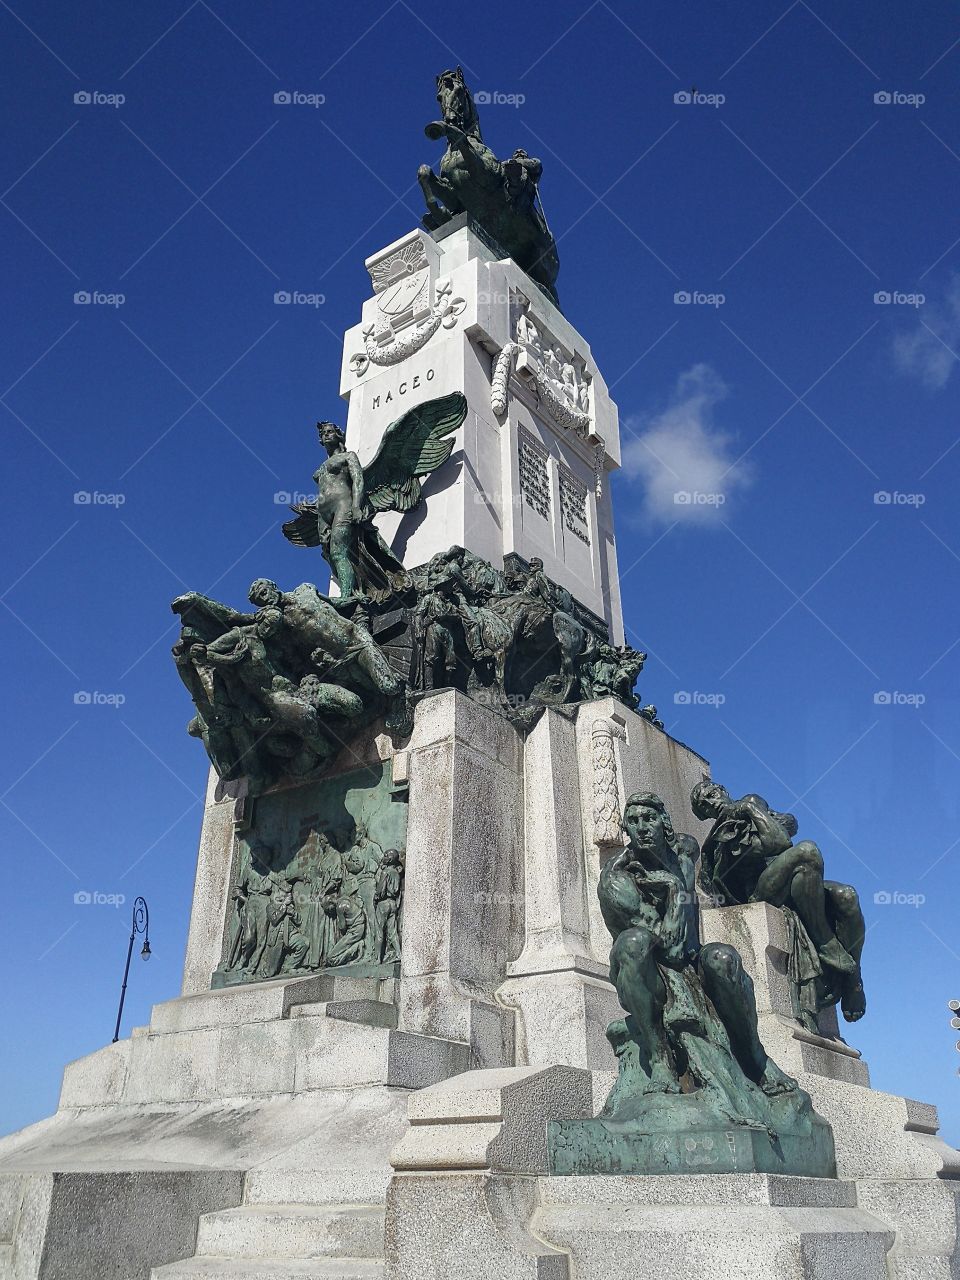 Statue in Cuba